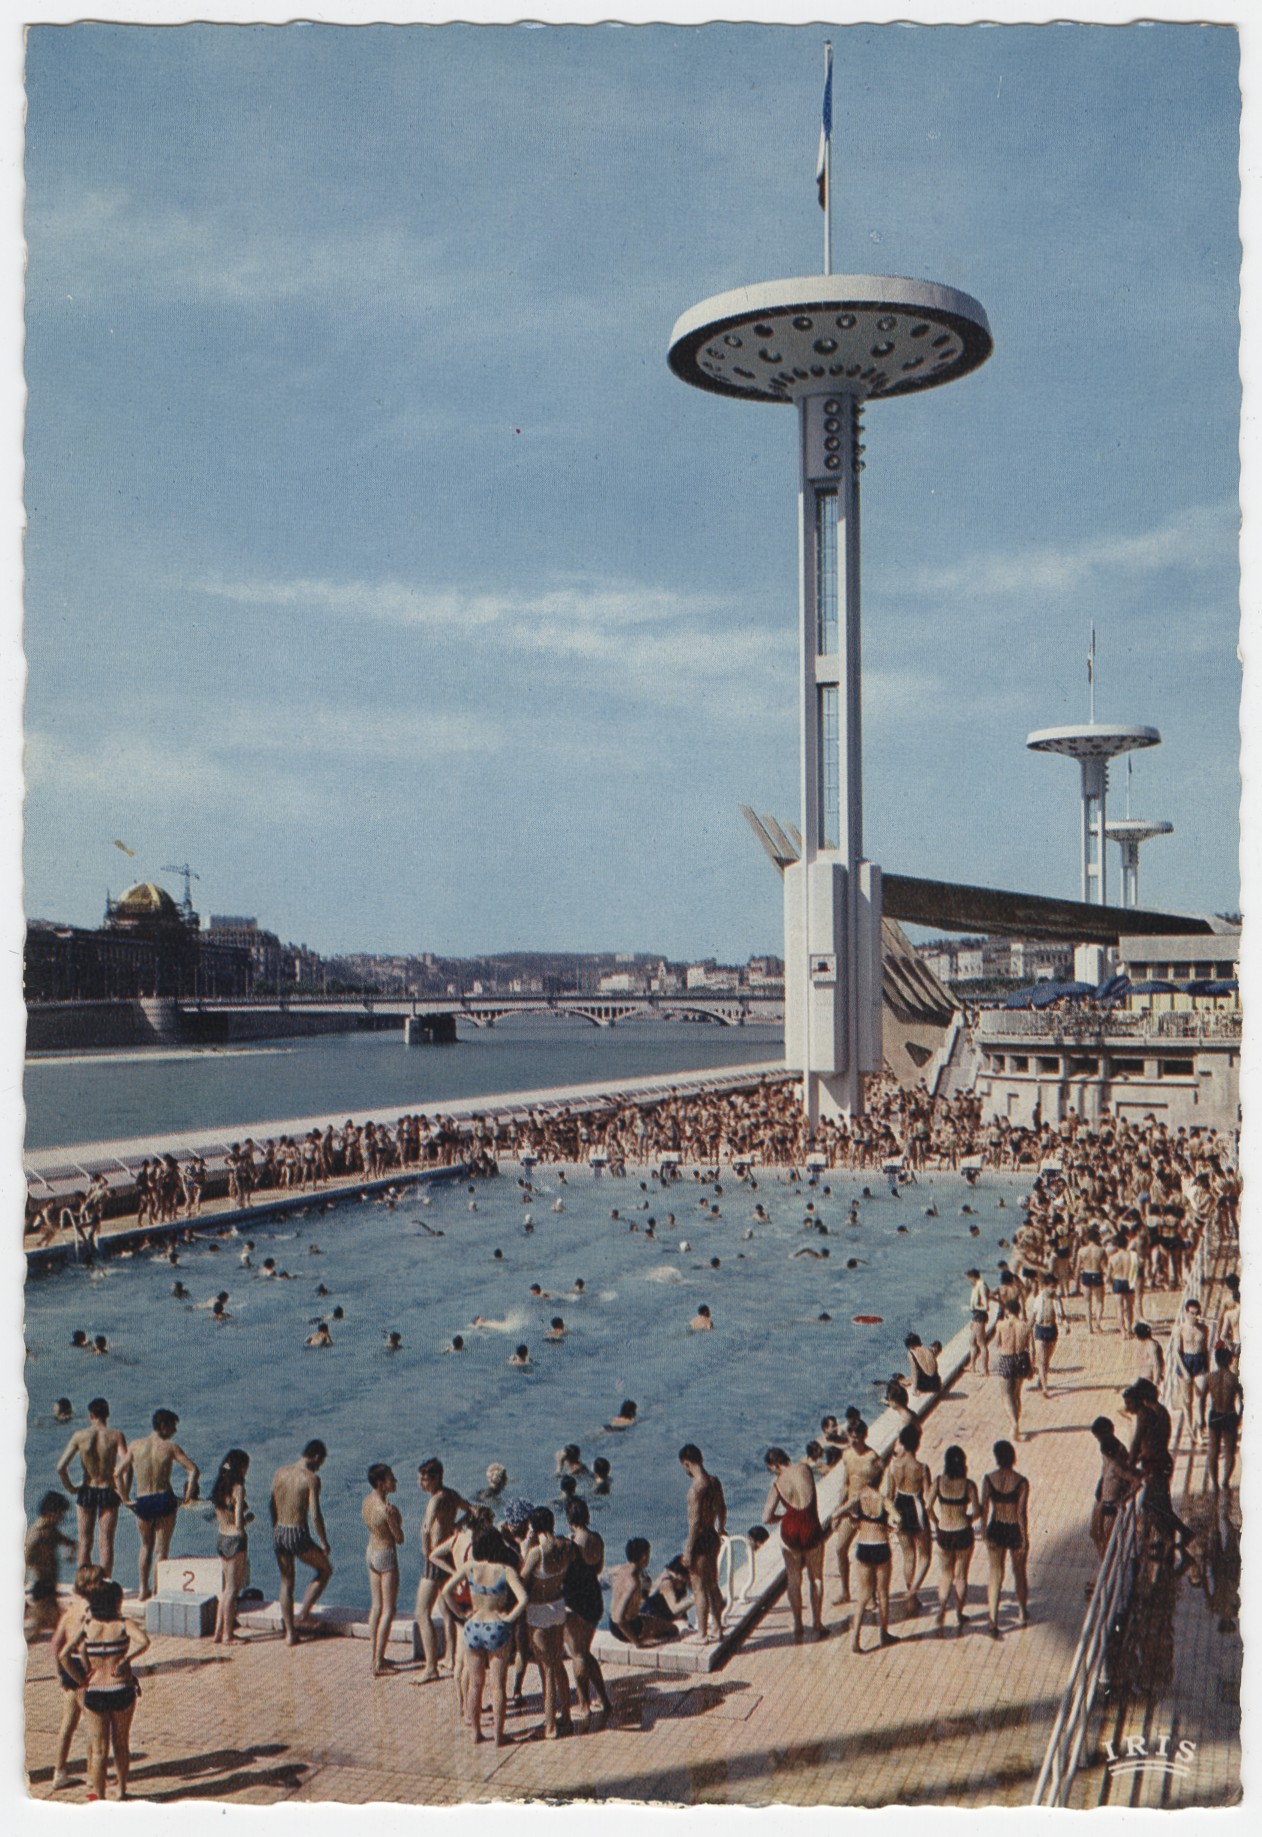 Lyon - La piscine, le bassin olympique : carte postale couleur (vers 1980, cote : 4FI/6436, repro. à usage privé)